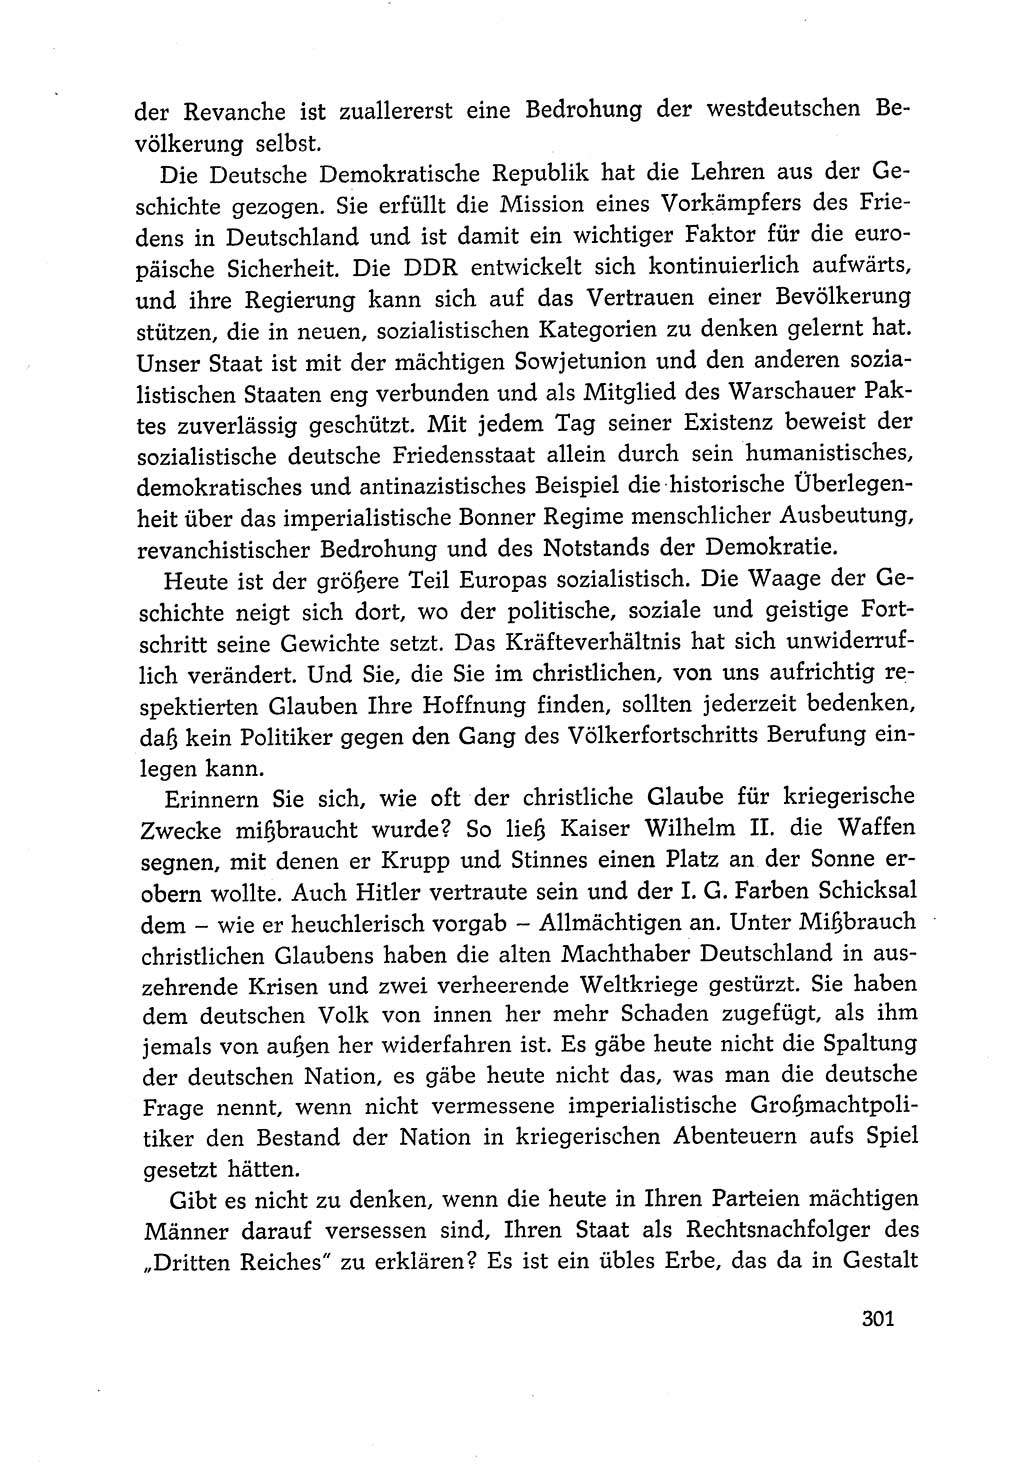 Dokumente der Sozialistischen Einheitspartei Deutschlands (SED) [Deutsche Demokratische Republik (DDR)] 1966-1967, Seite 301 (Dok. SED DDR 1966-1967, S. 301)